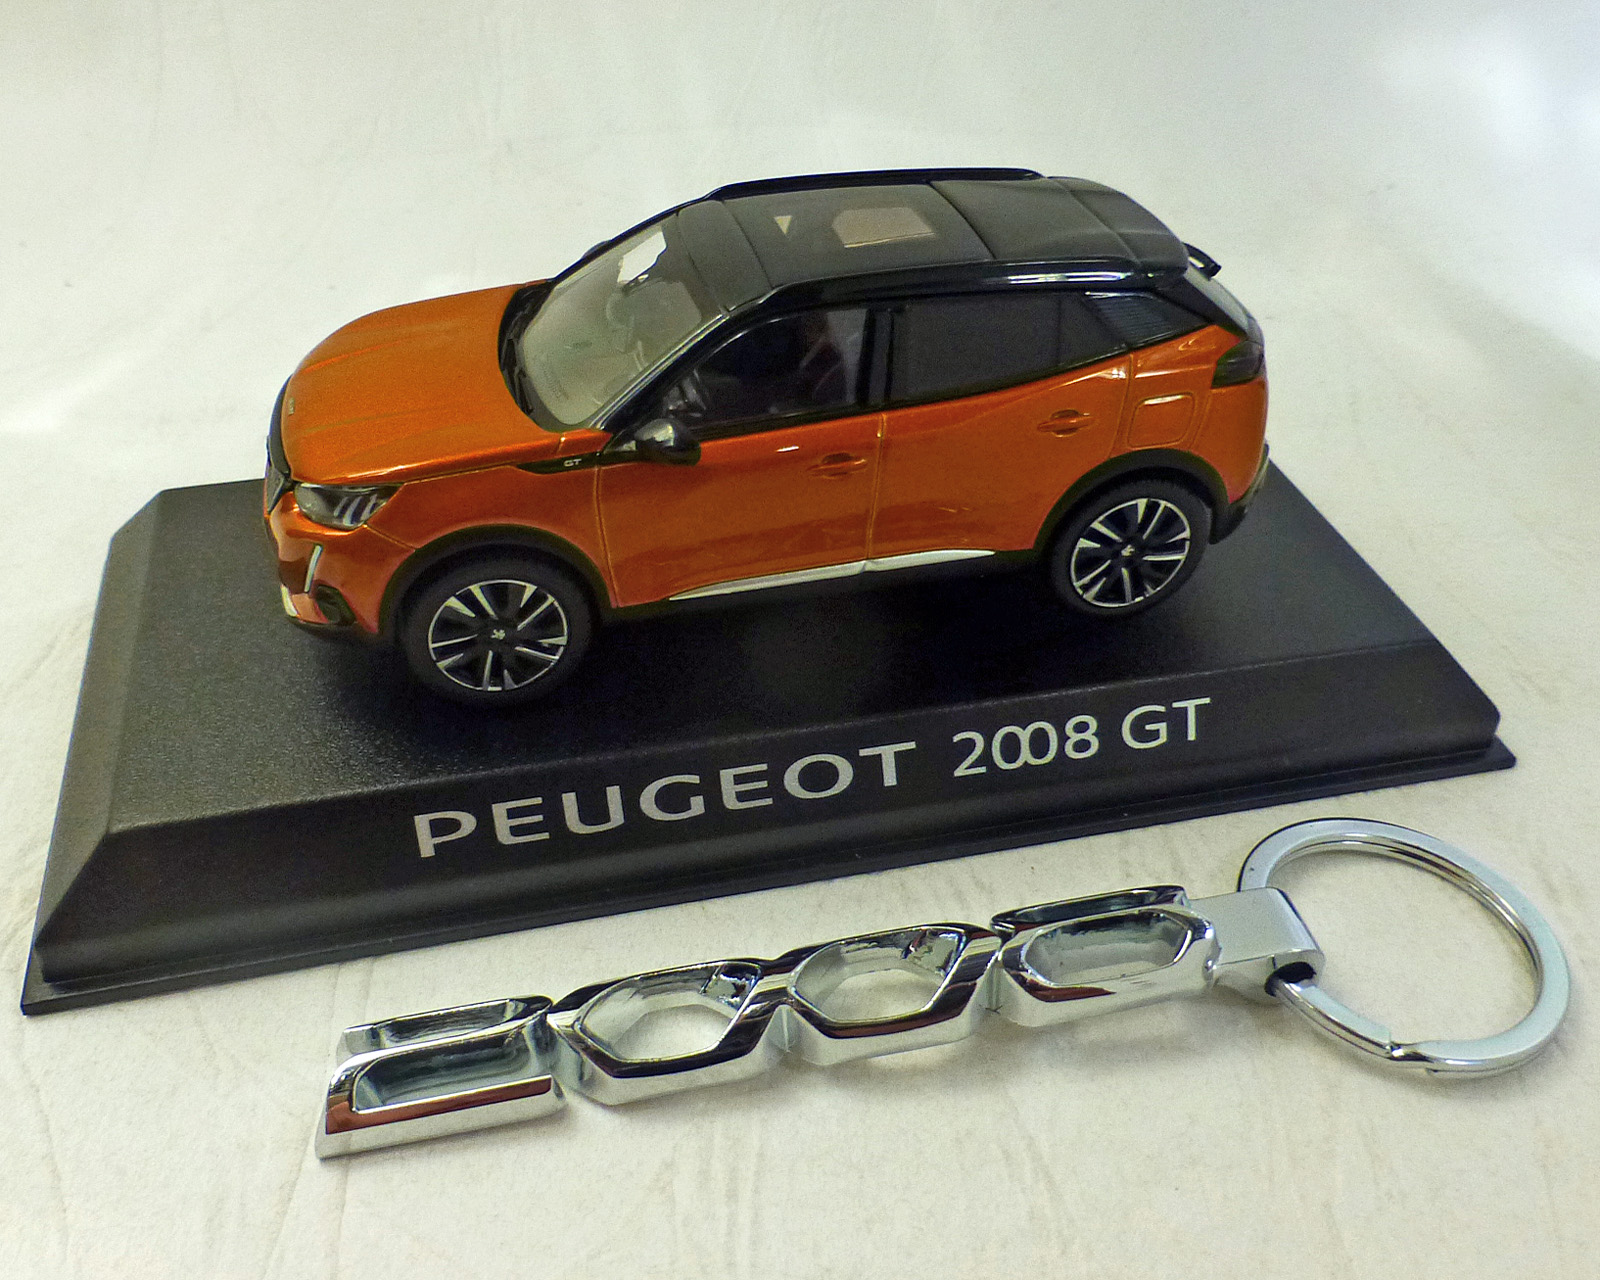 Peugeot 2008 GT 2020, orange-Met. incl. Schlüsselanhänger